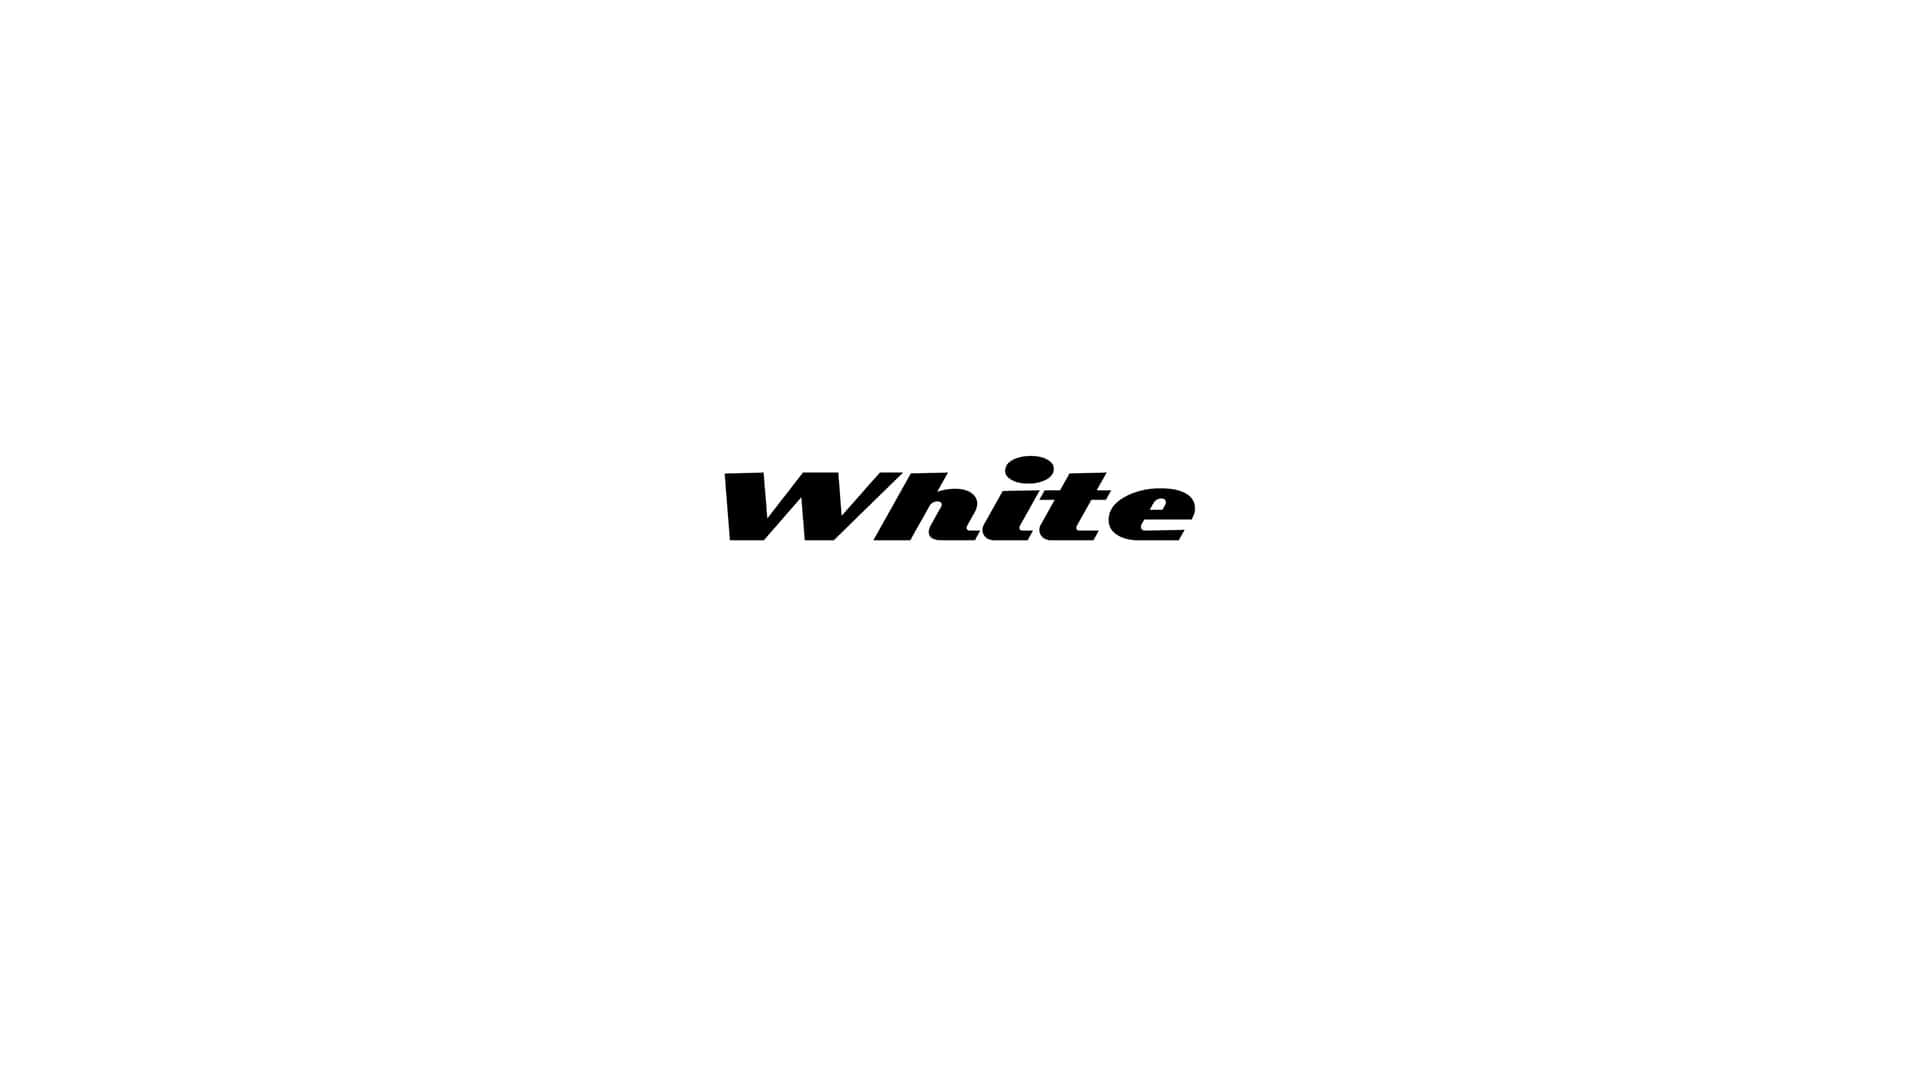 White Logo On A White Background